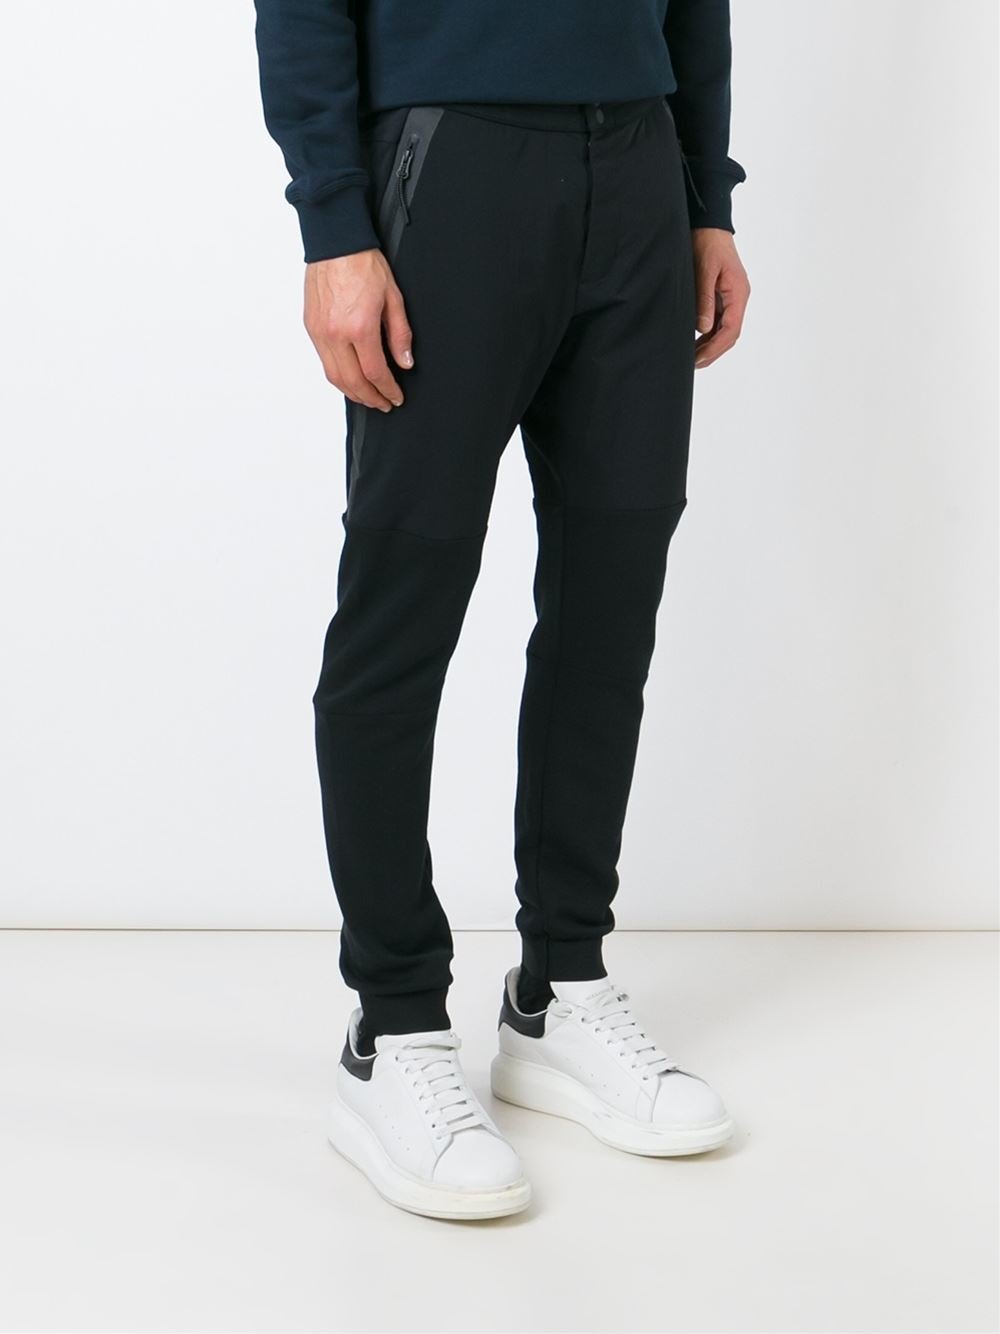 Nike 'tech Fleece' Track Pants in Black for Men - Lyst